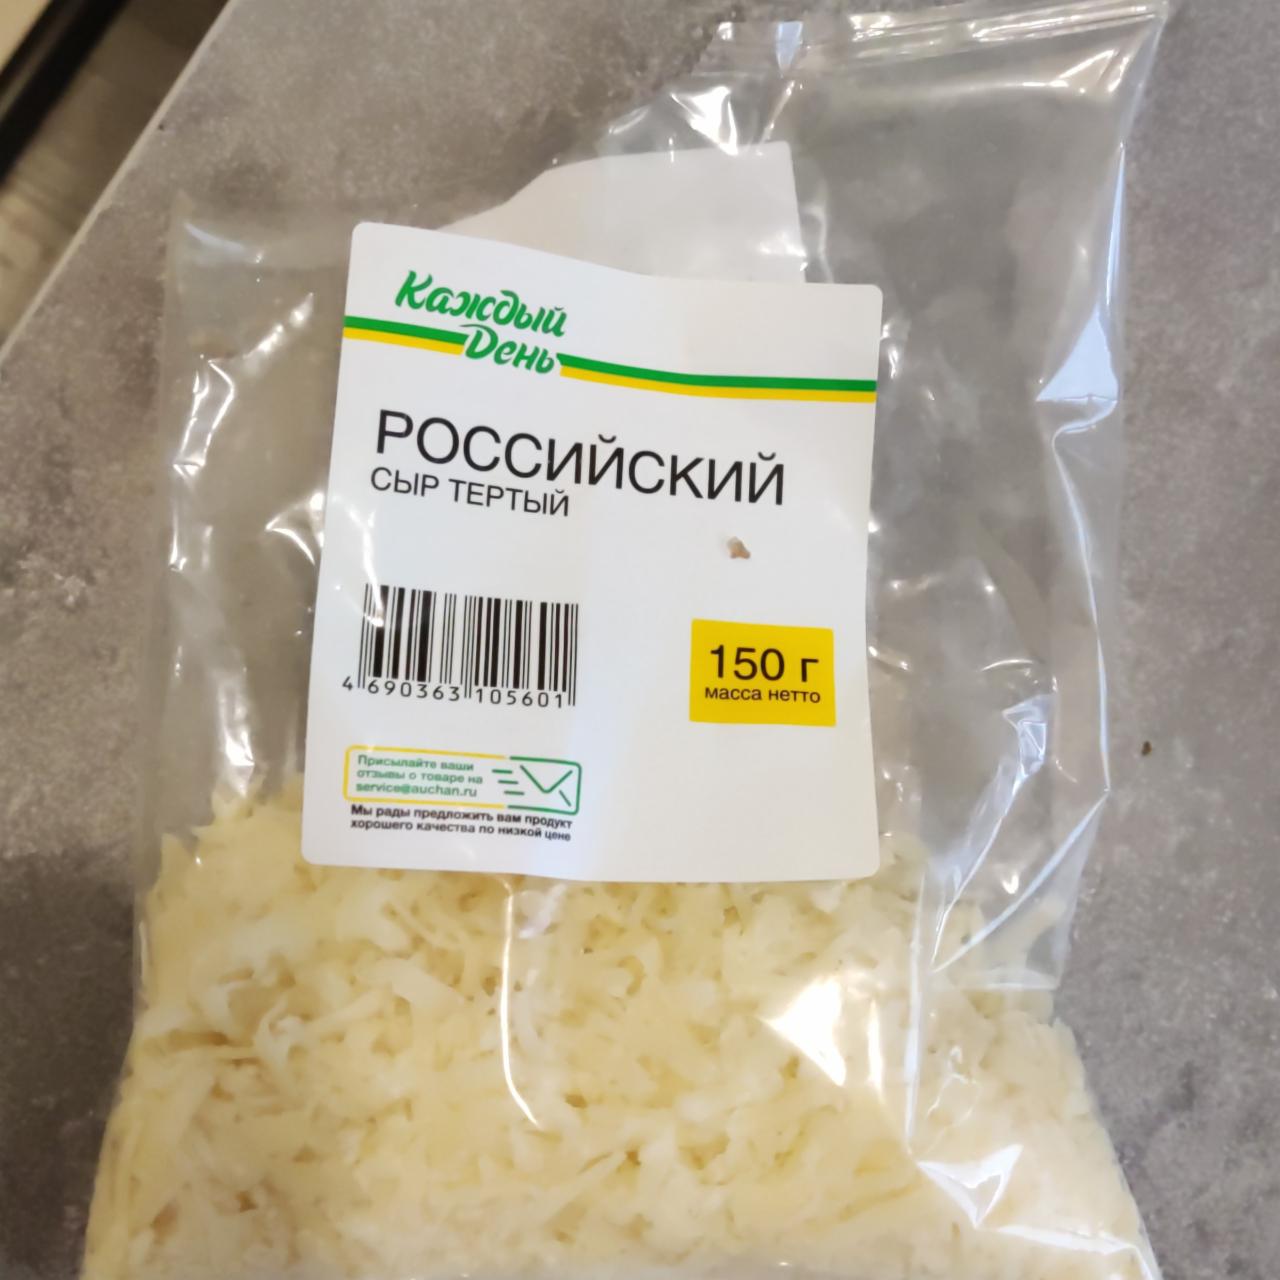 Фото - Российский сыр тертый Каждый день